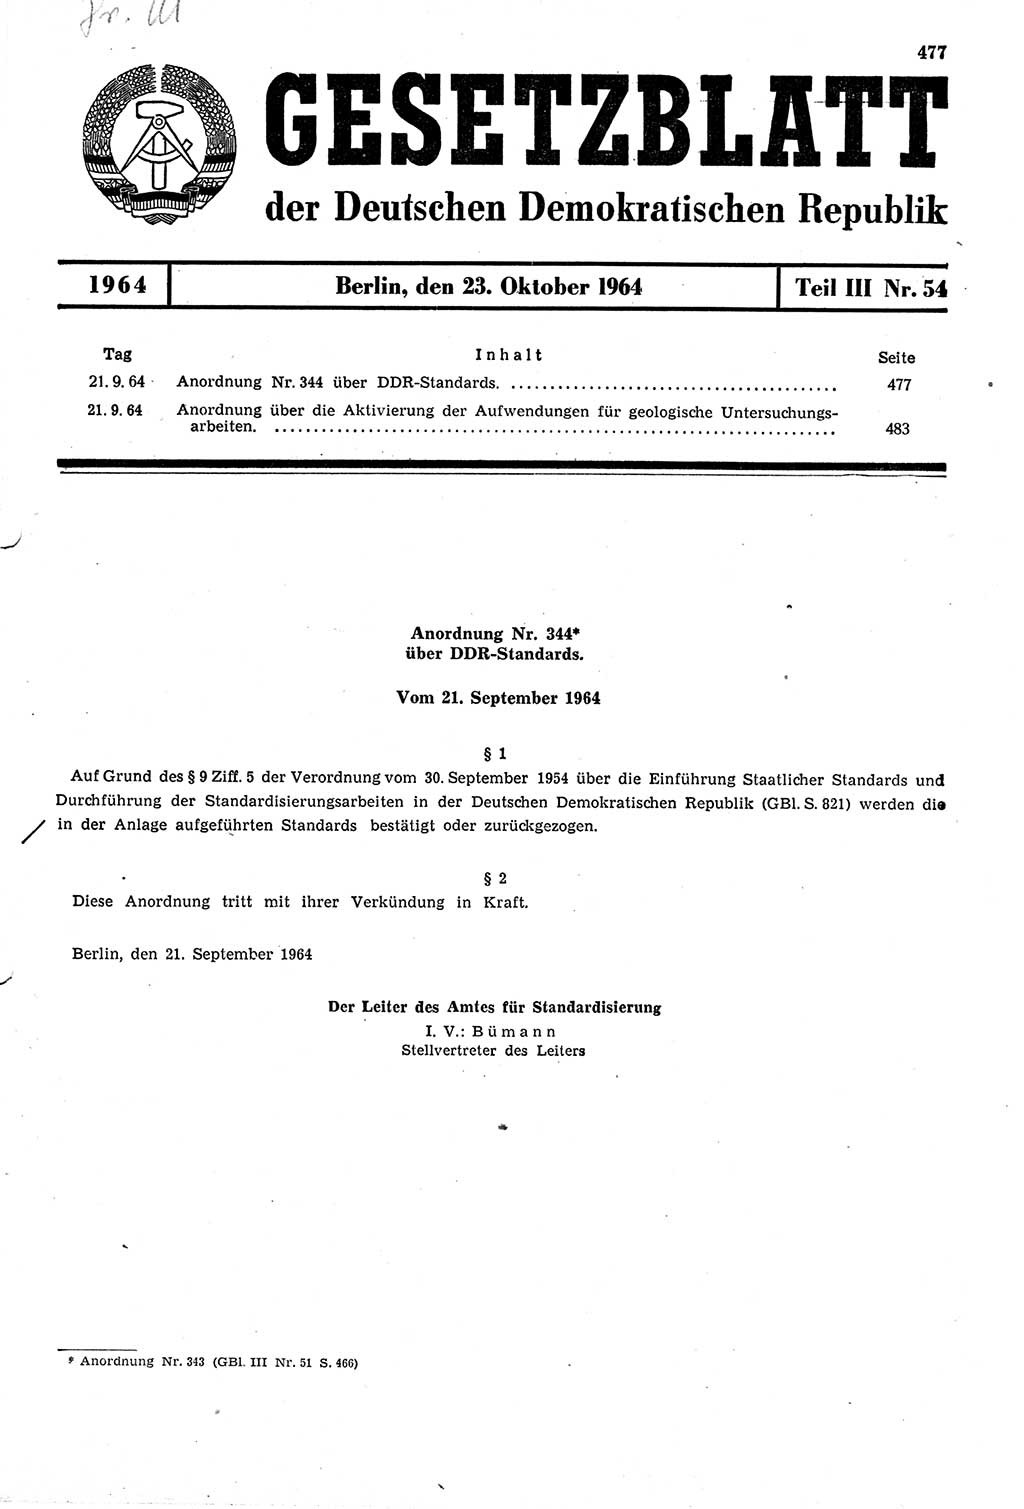 Gesetzblatt (GBl.) der Deutschen Demokratischen Republik (DDR) Teil ⅠⅠⅠ 1964, Seite 477 (GBl. DDR ⅠⅠⅠ 1964, S. 477)